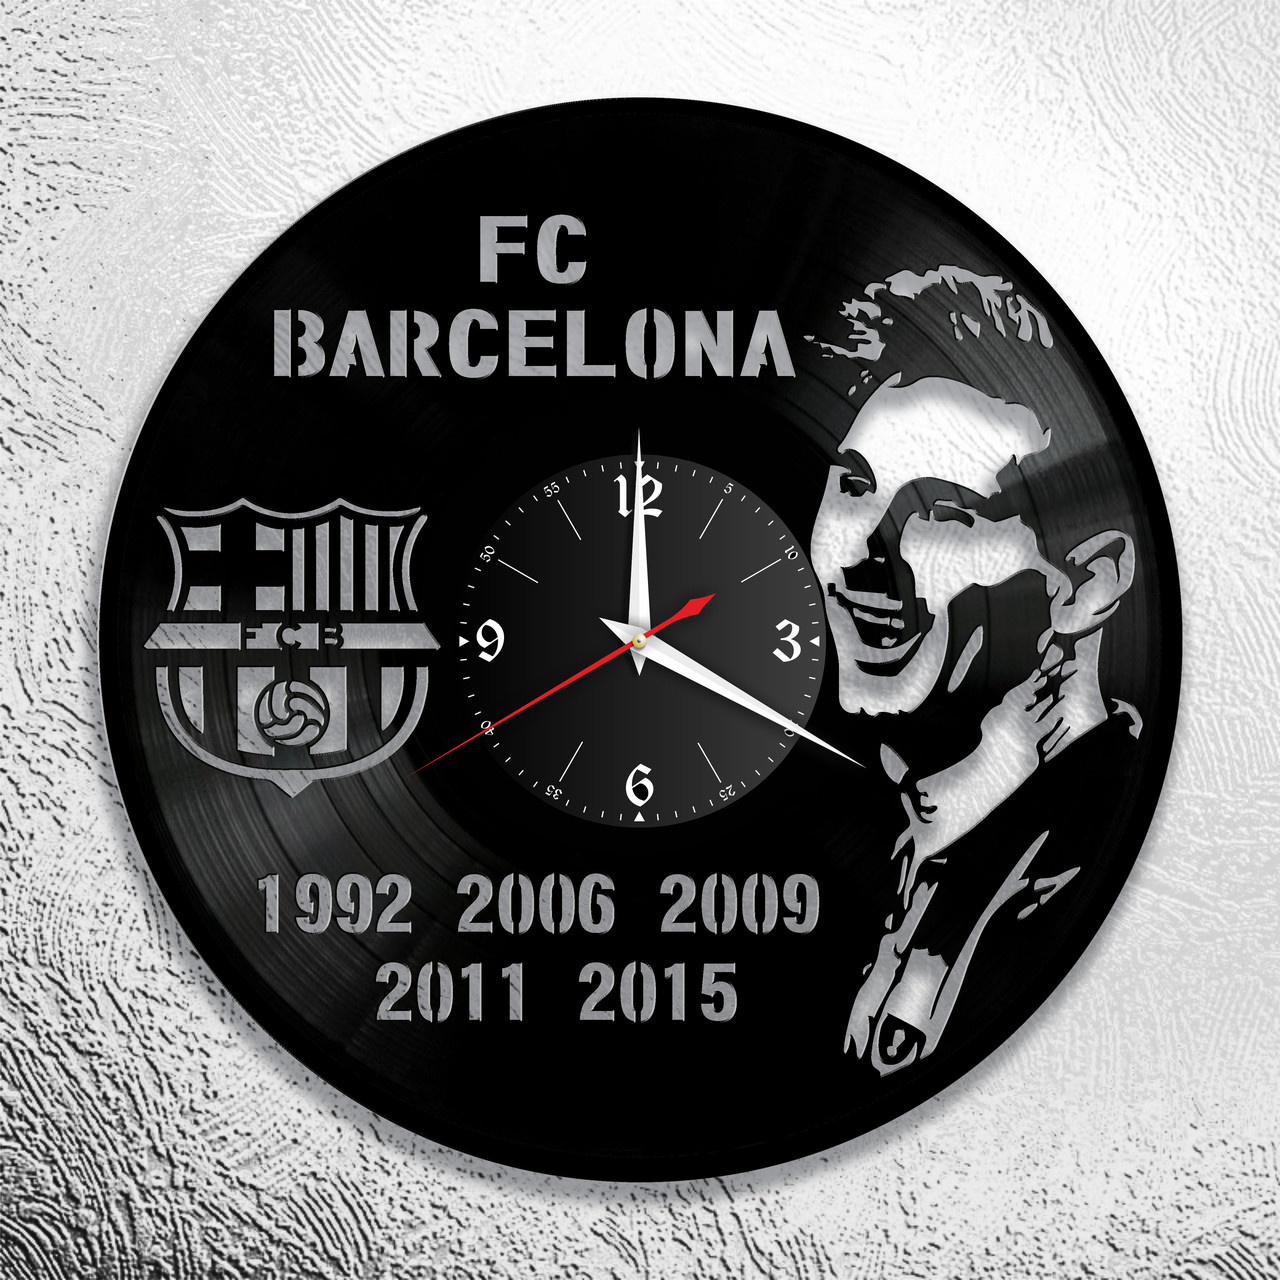 Оригинальные часы из виниловых пластинок  "Барселона" версия 1